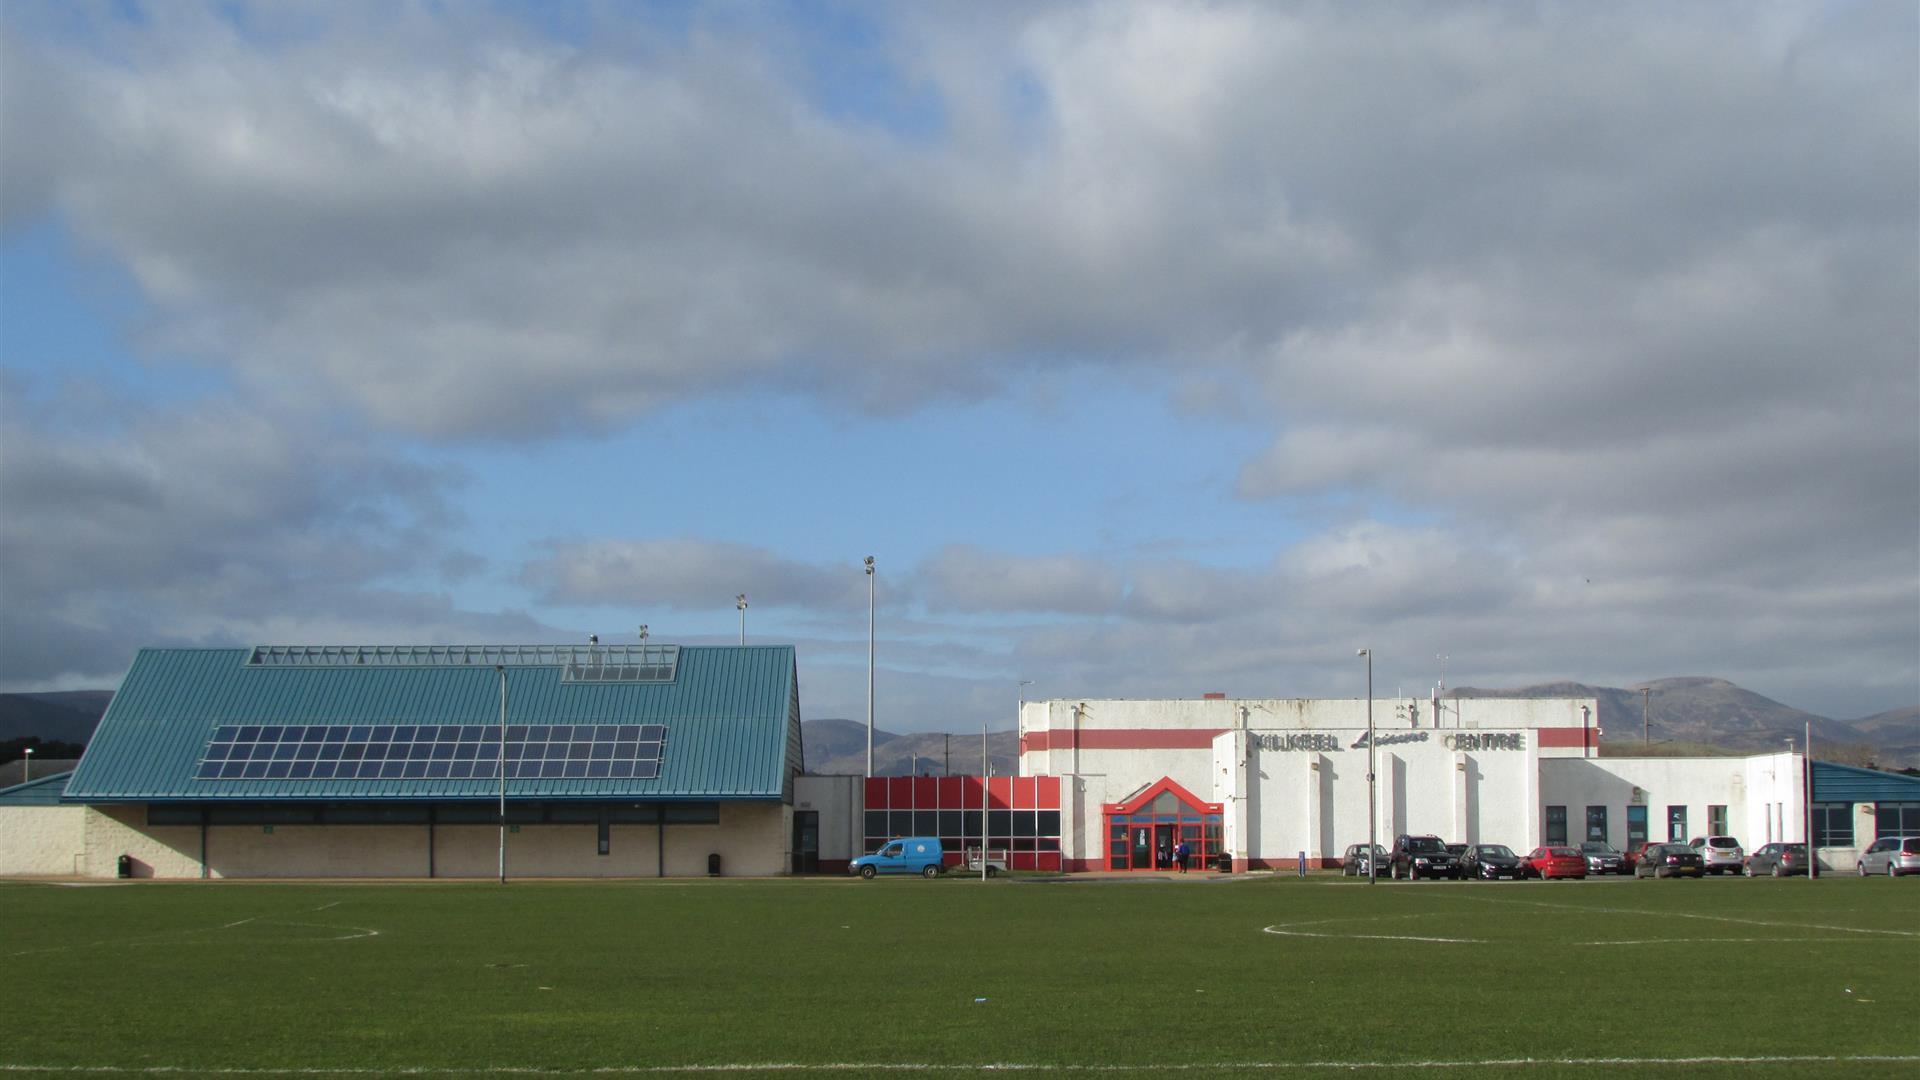 Kilkeel Leisure Centre